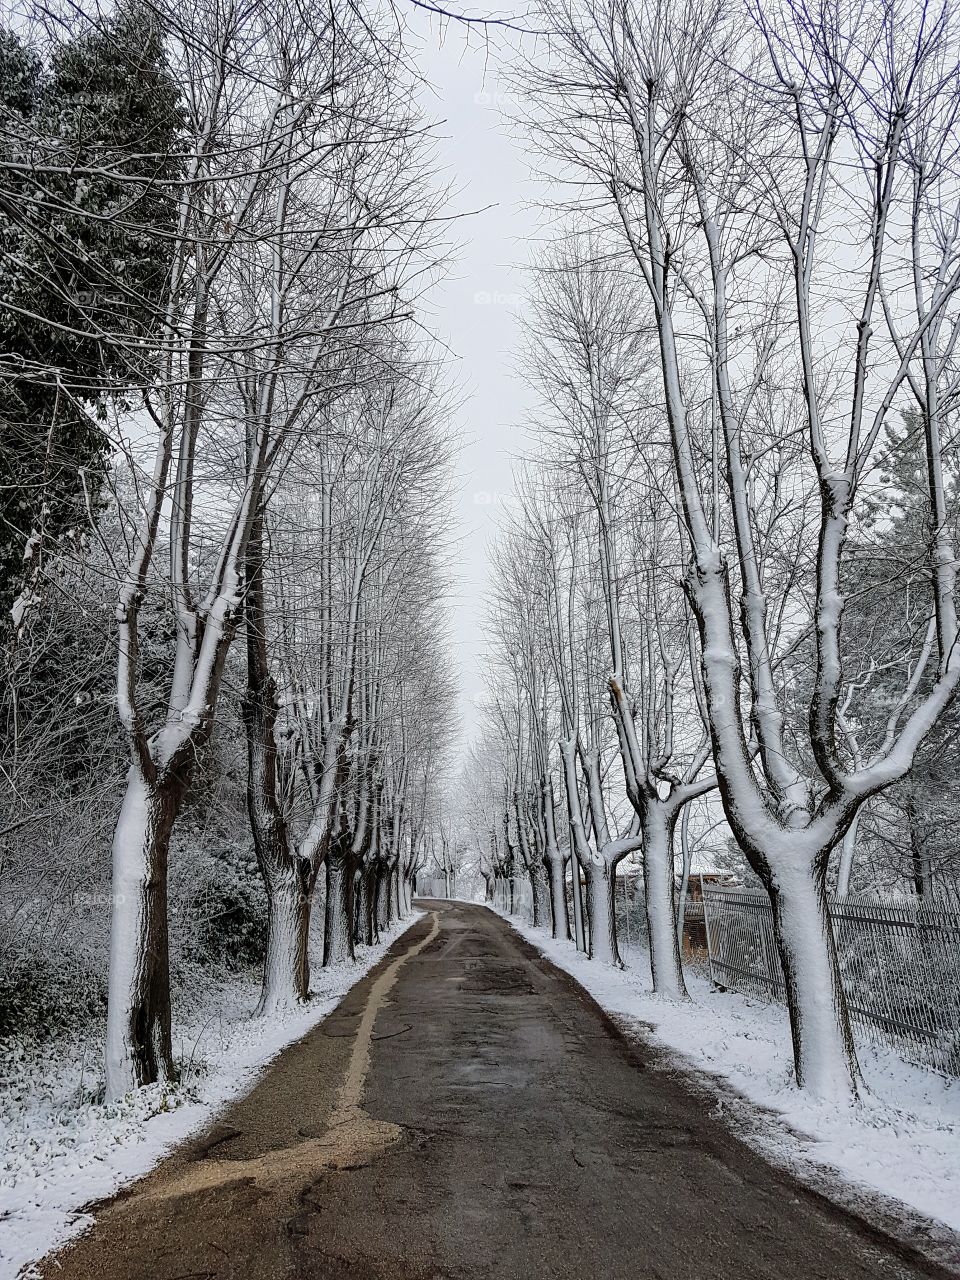 The white walk